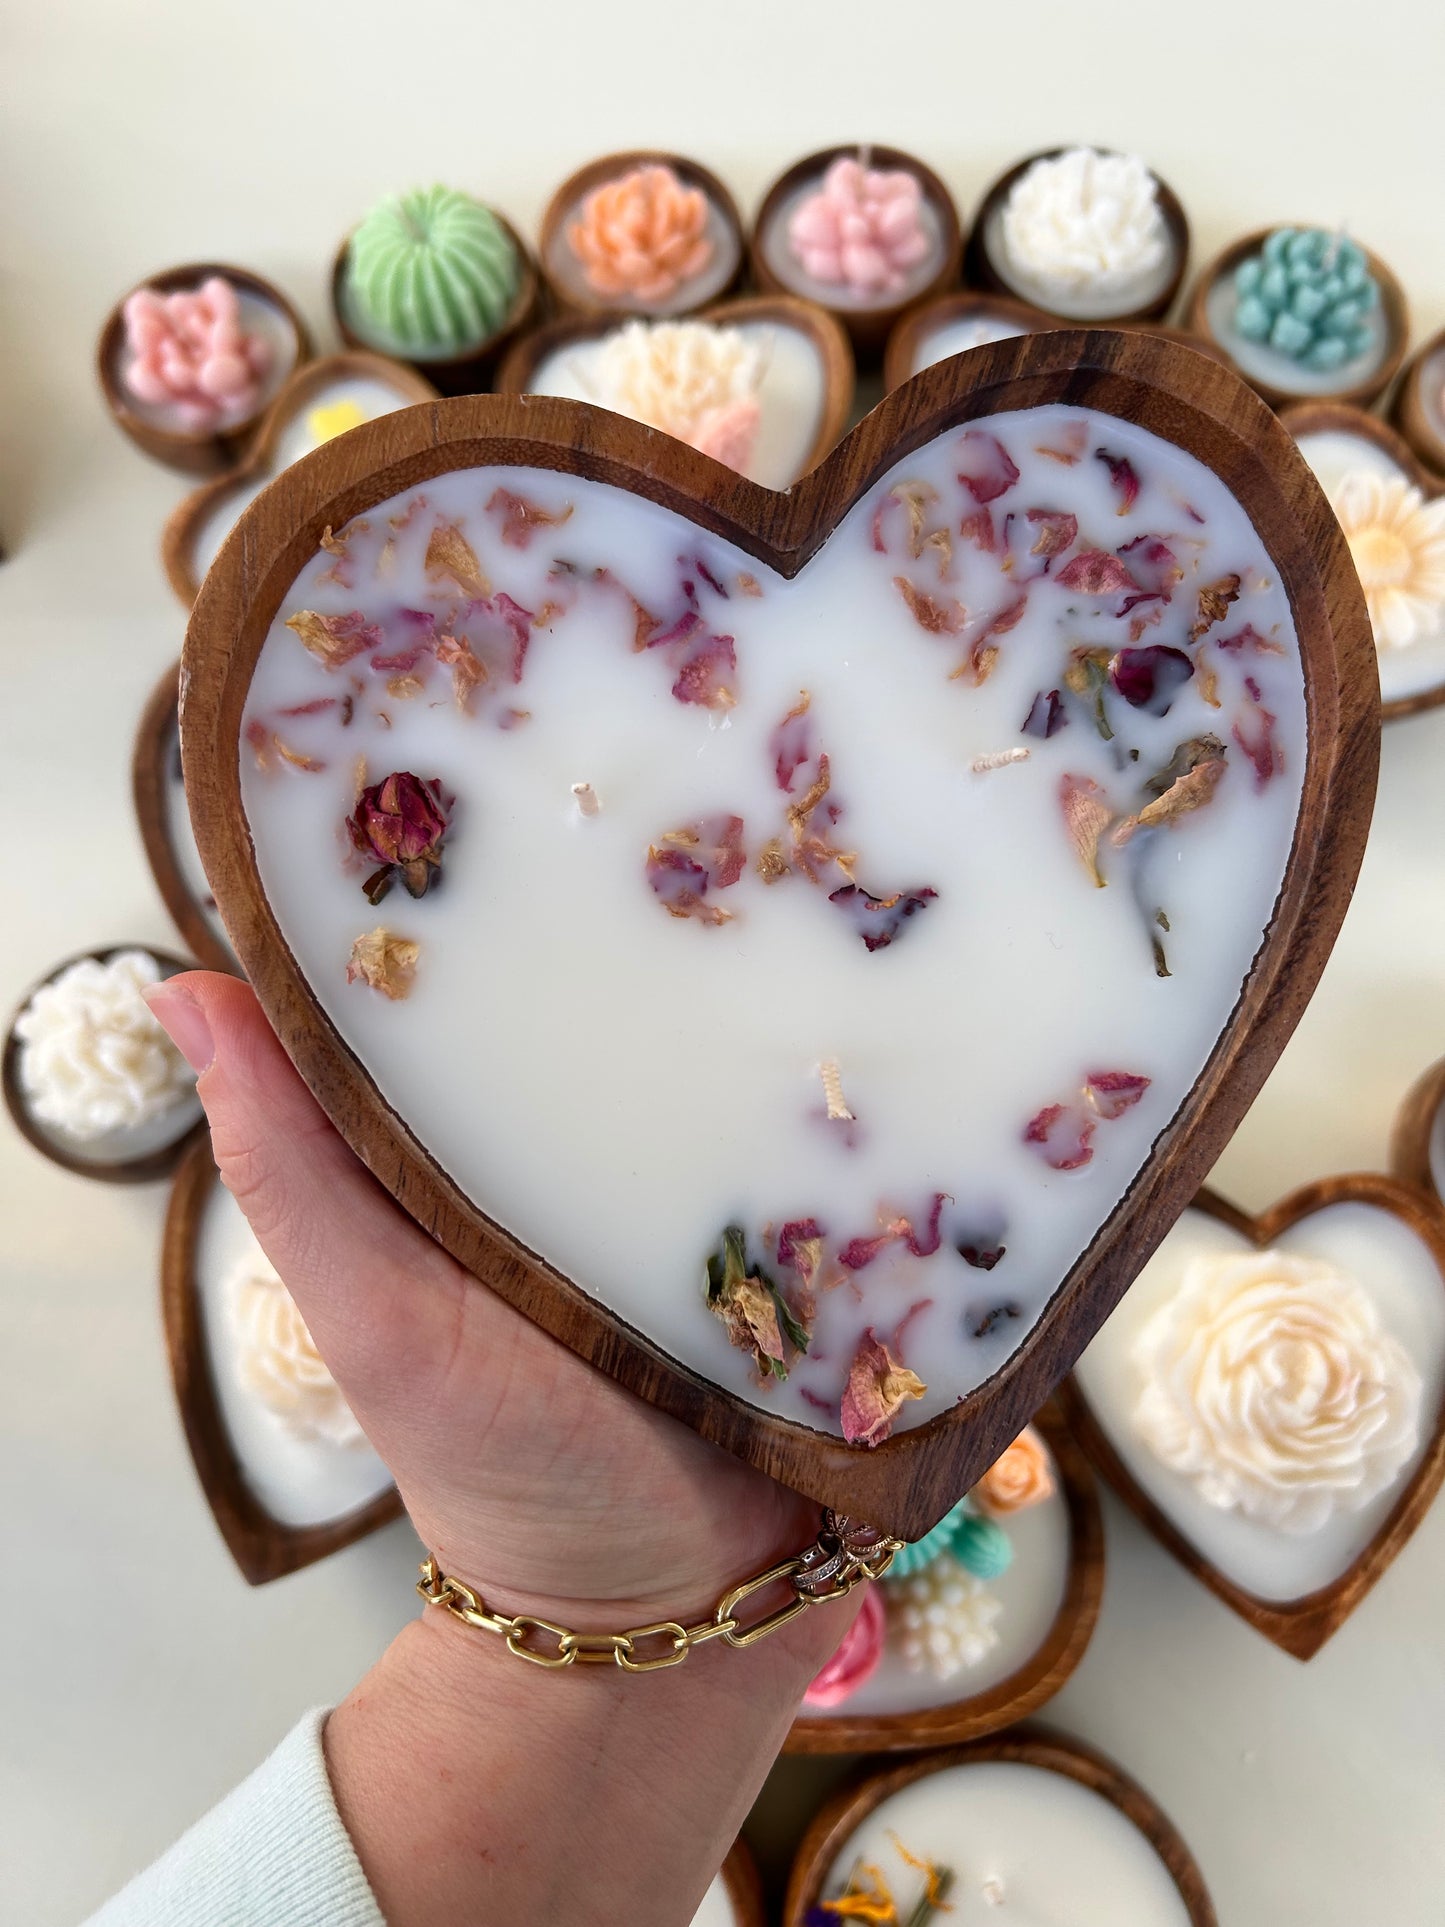 Wooden heart bowl rose petals